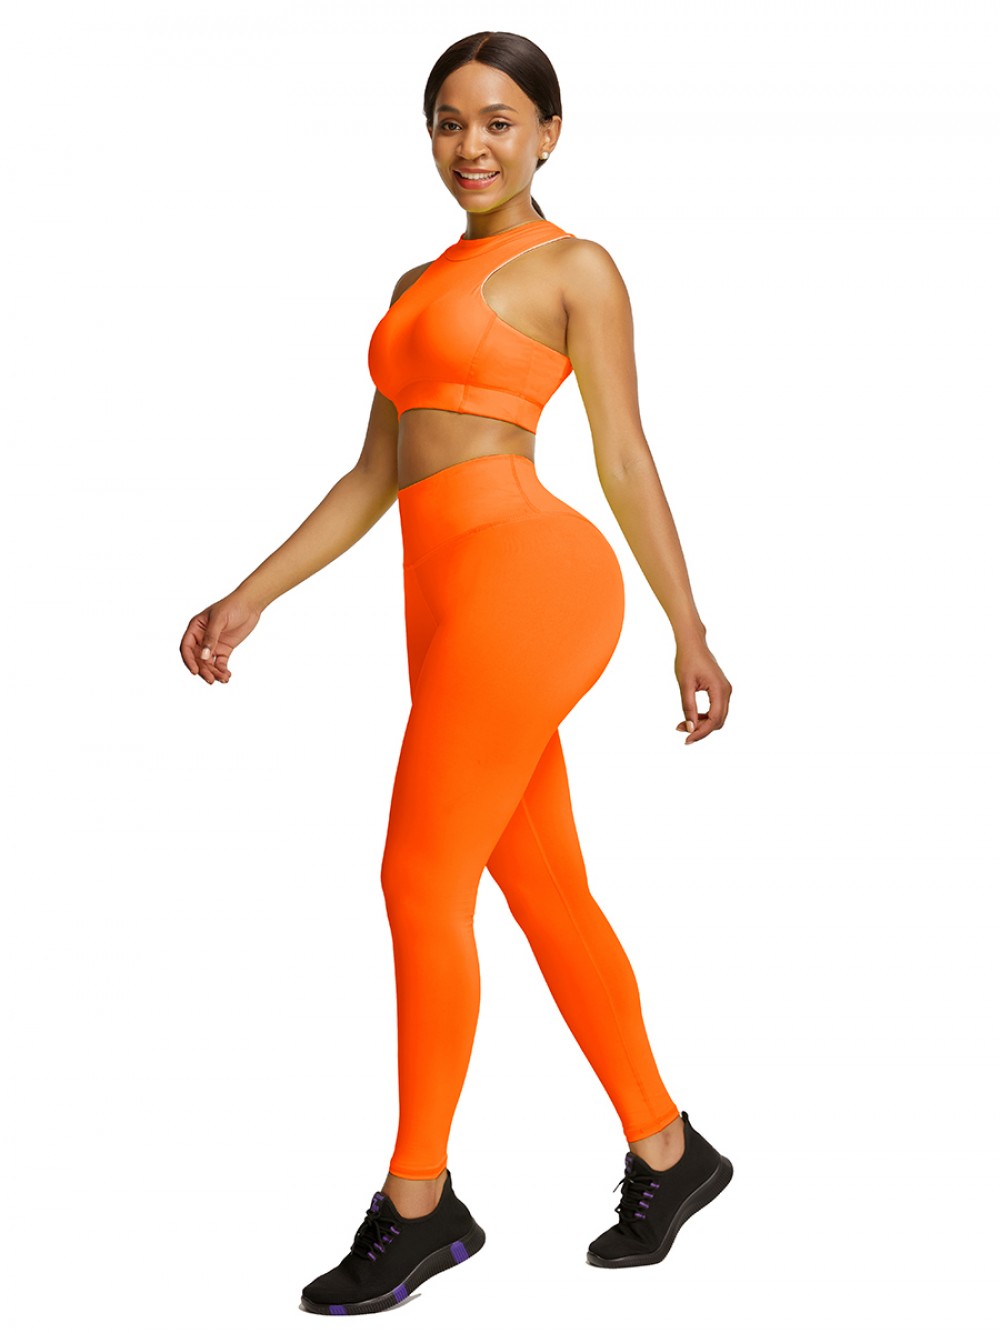 Stretchable Orange Cropped Sleeveless Back Zip Yoga Suit For Women